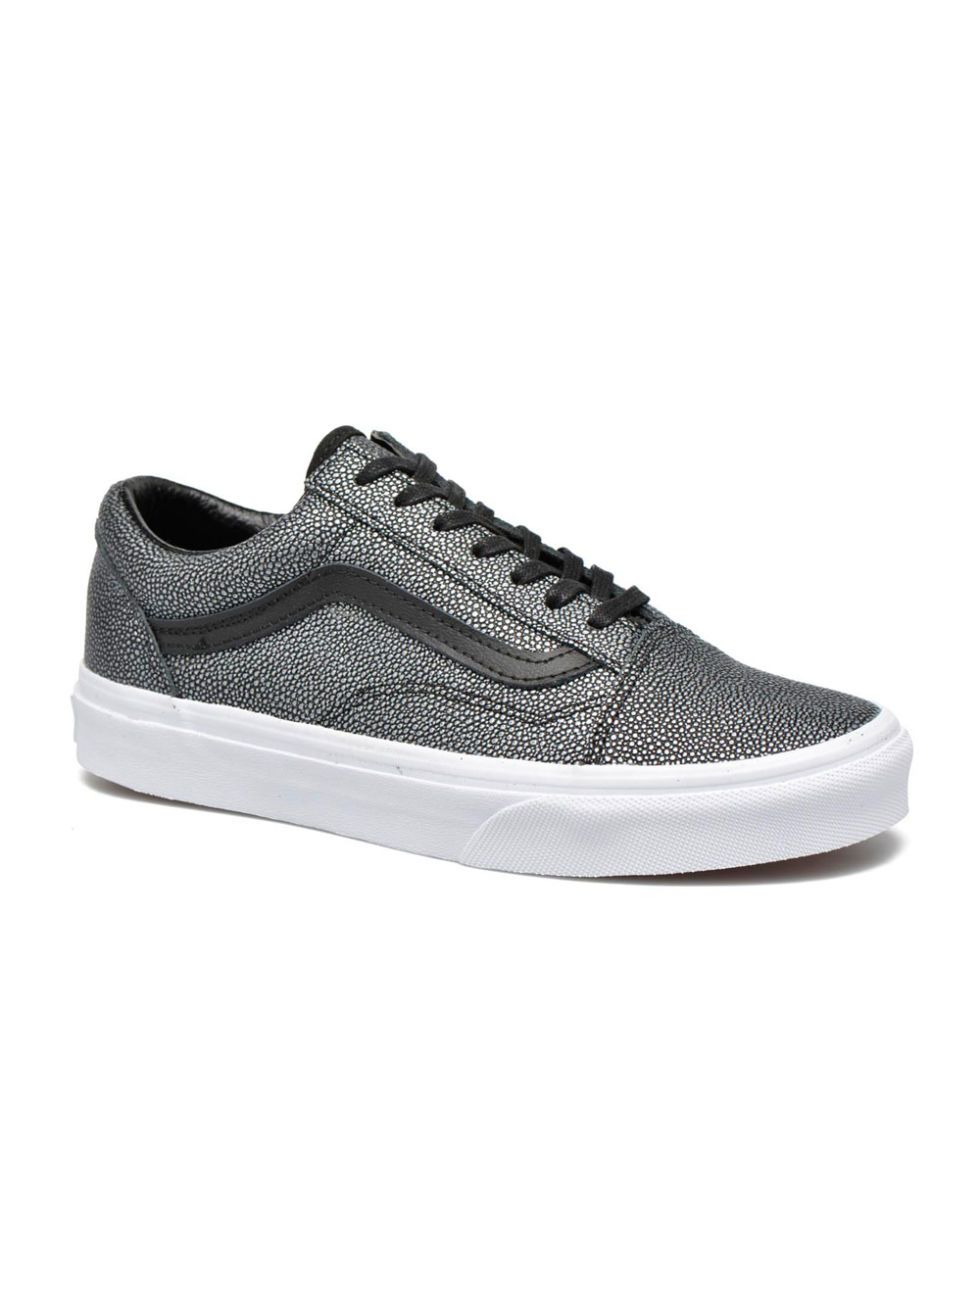 Shoe, Footwear, White, Sneakers, Skate shoe, Product, Plimsoll shoe, Outdoor shoe, Grey, Walking shoe, 